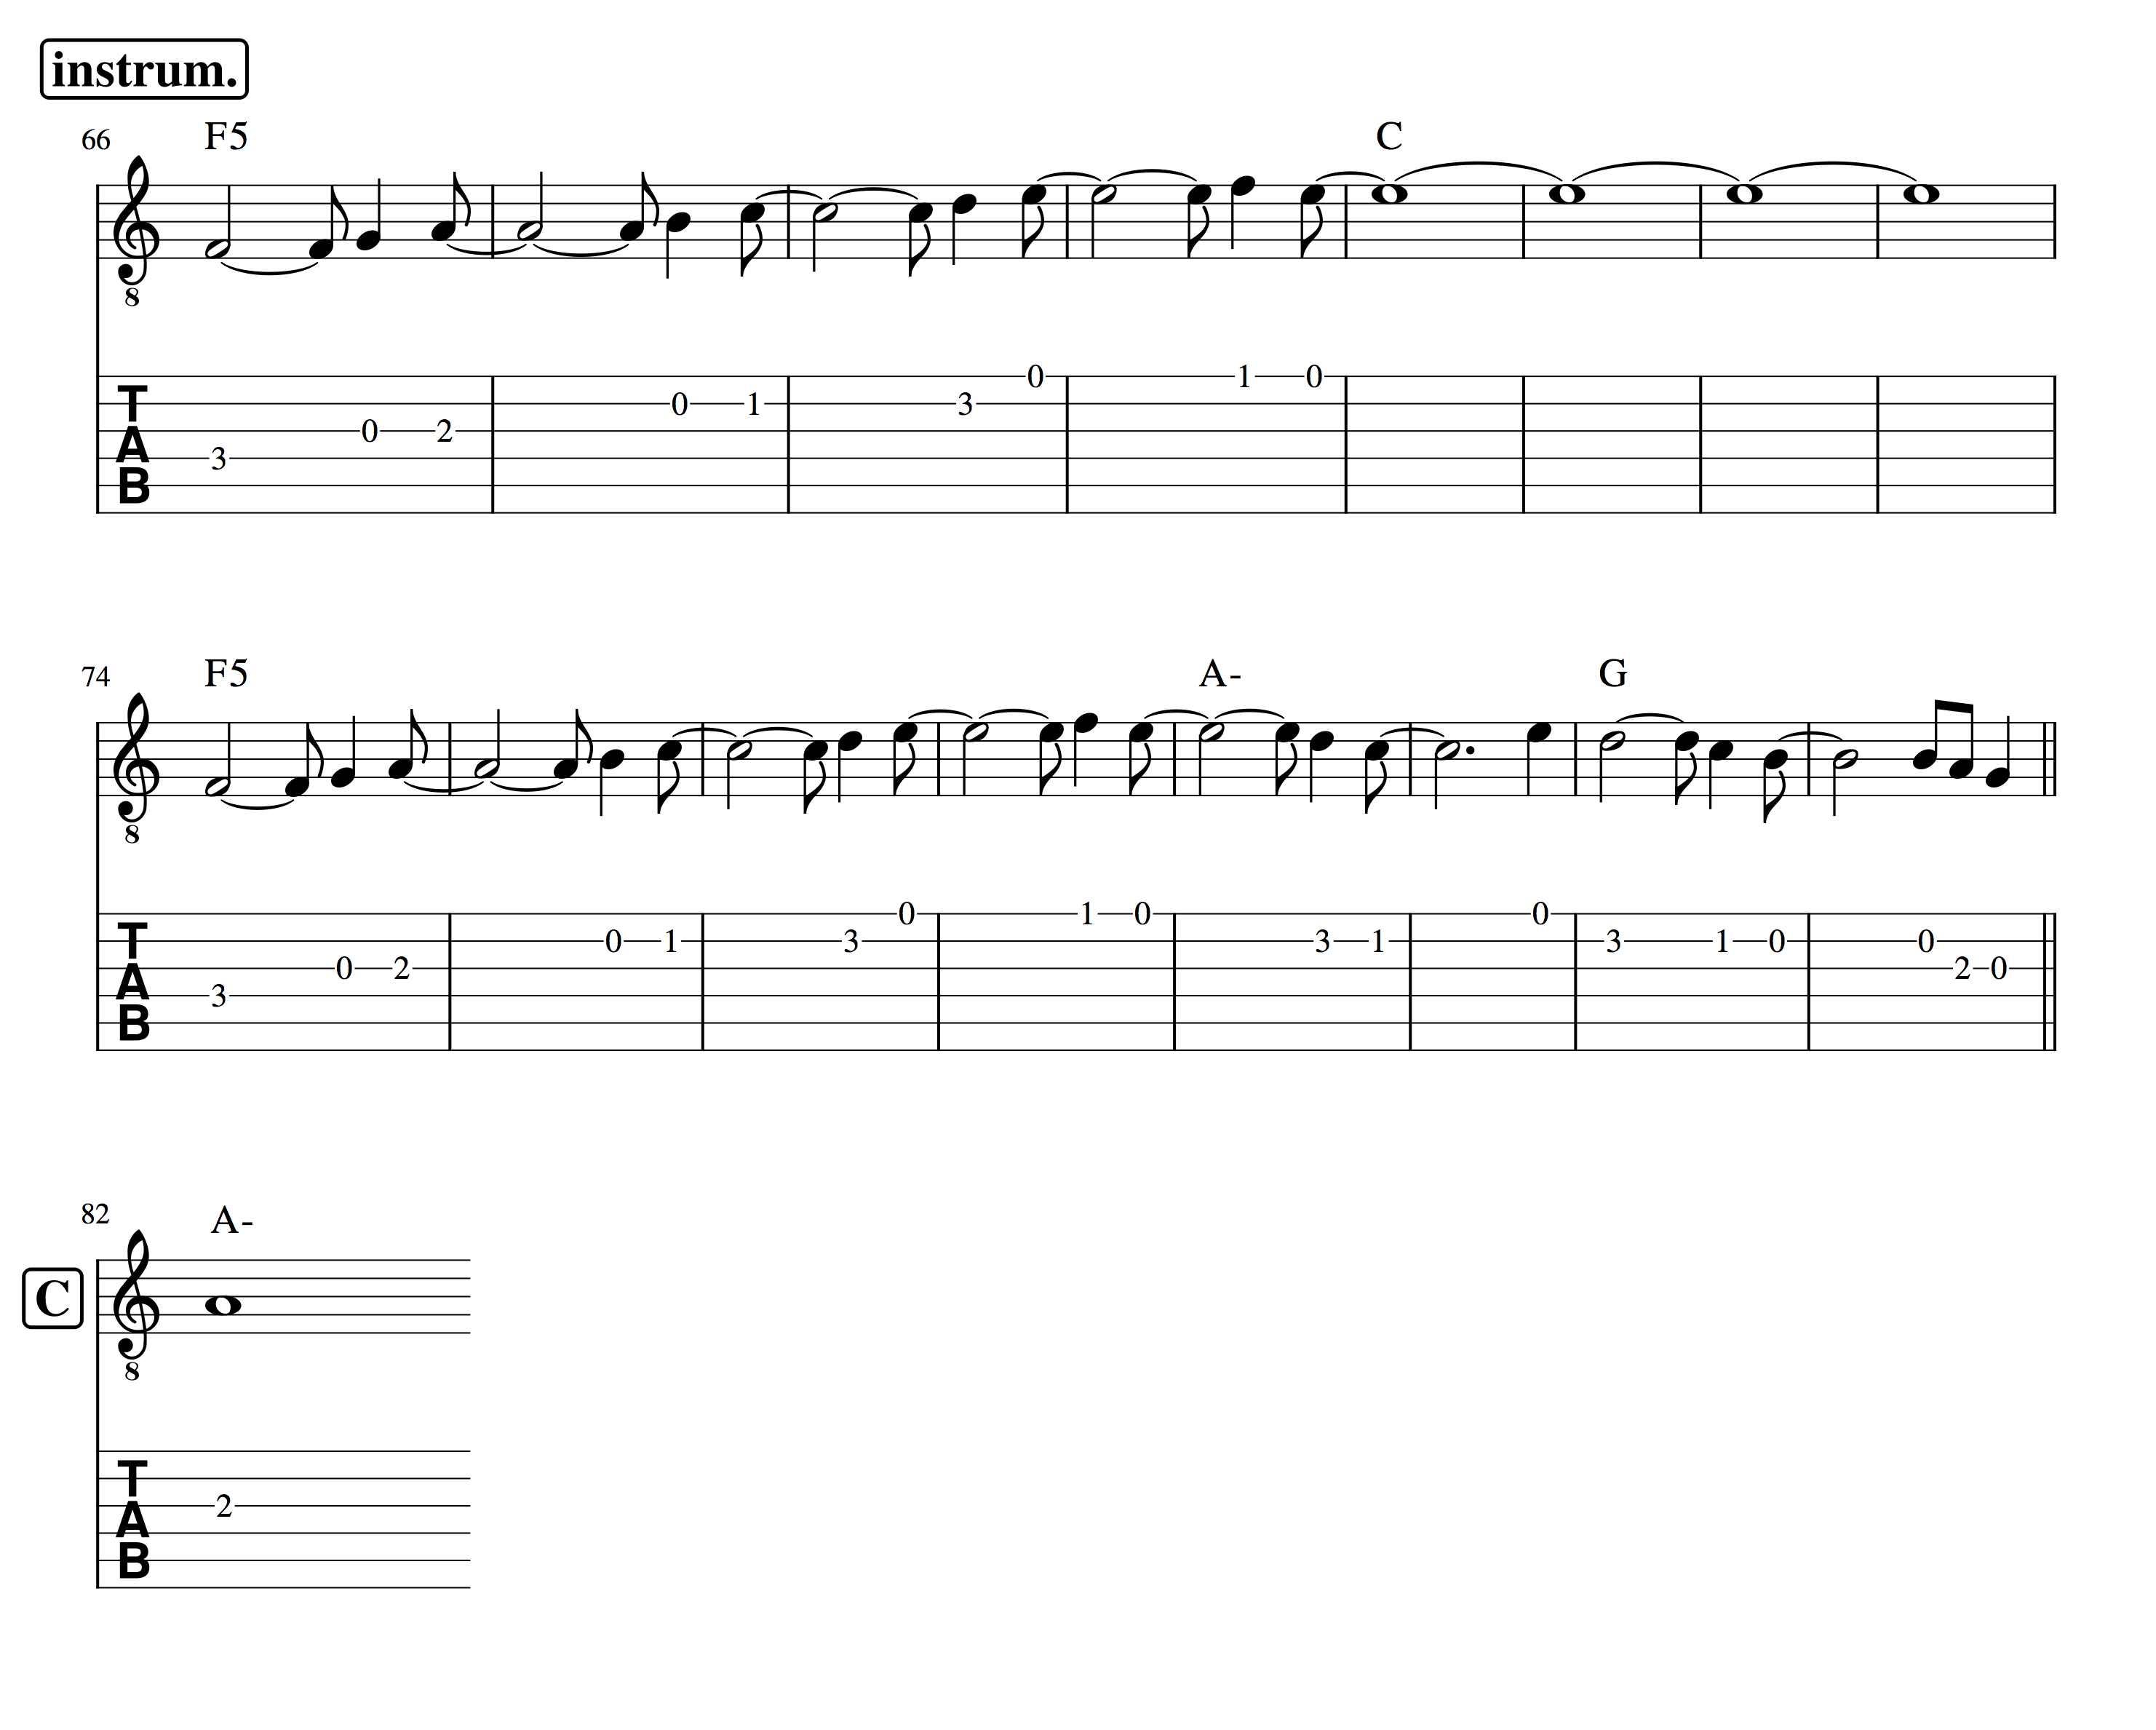 Partitura y tablatura para guitarra de la parte instrumental de Entre la espada y la pared de Fito y Fitipaldis